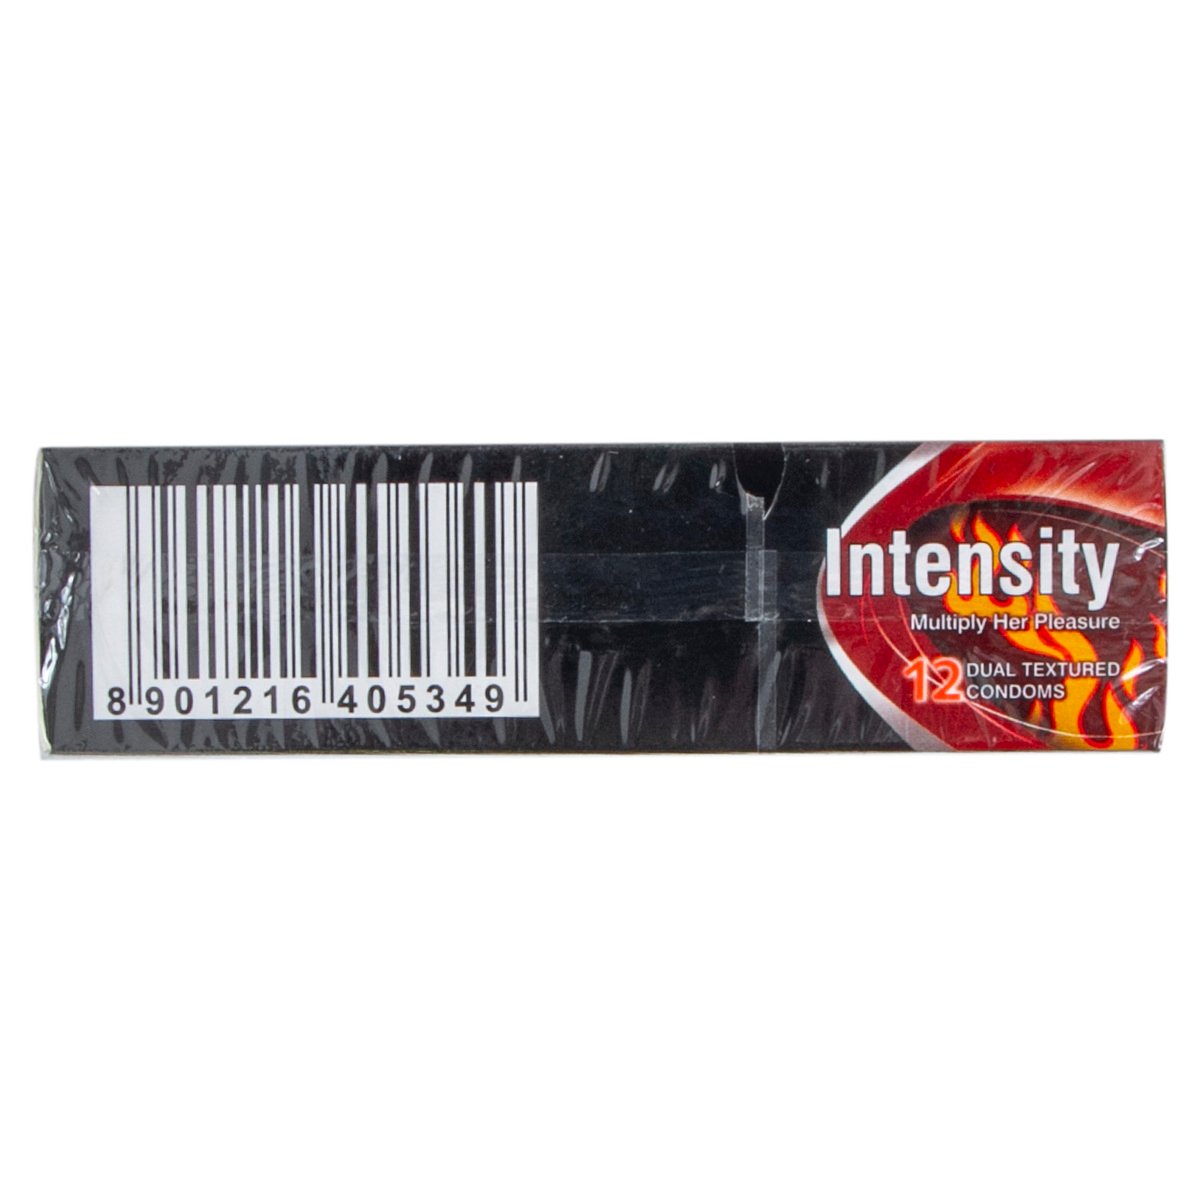 Kamasutra Intensity Condoms 12 pcs